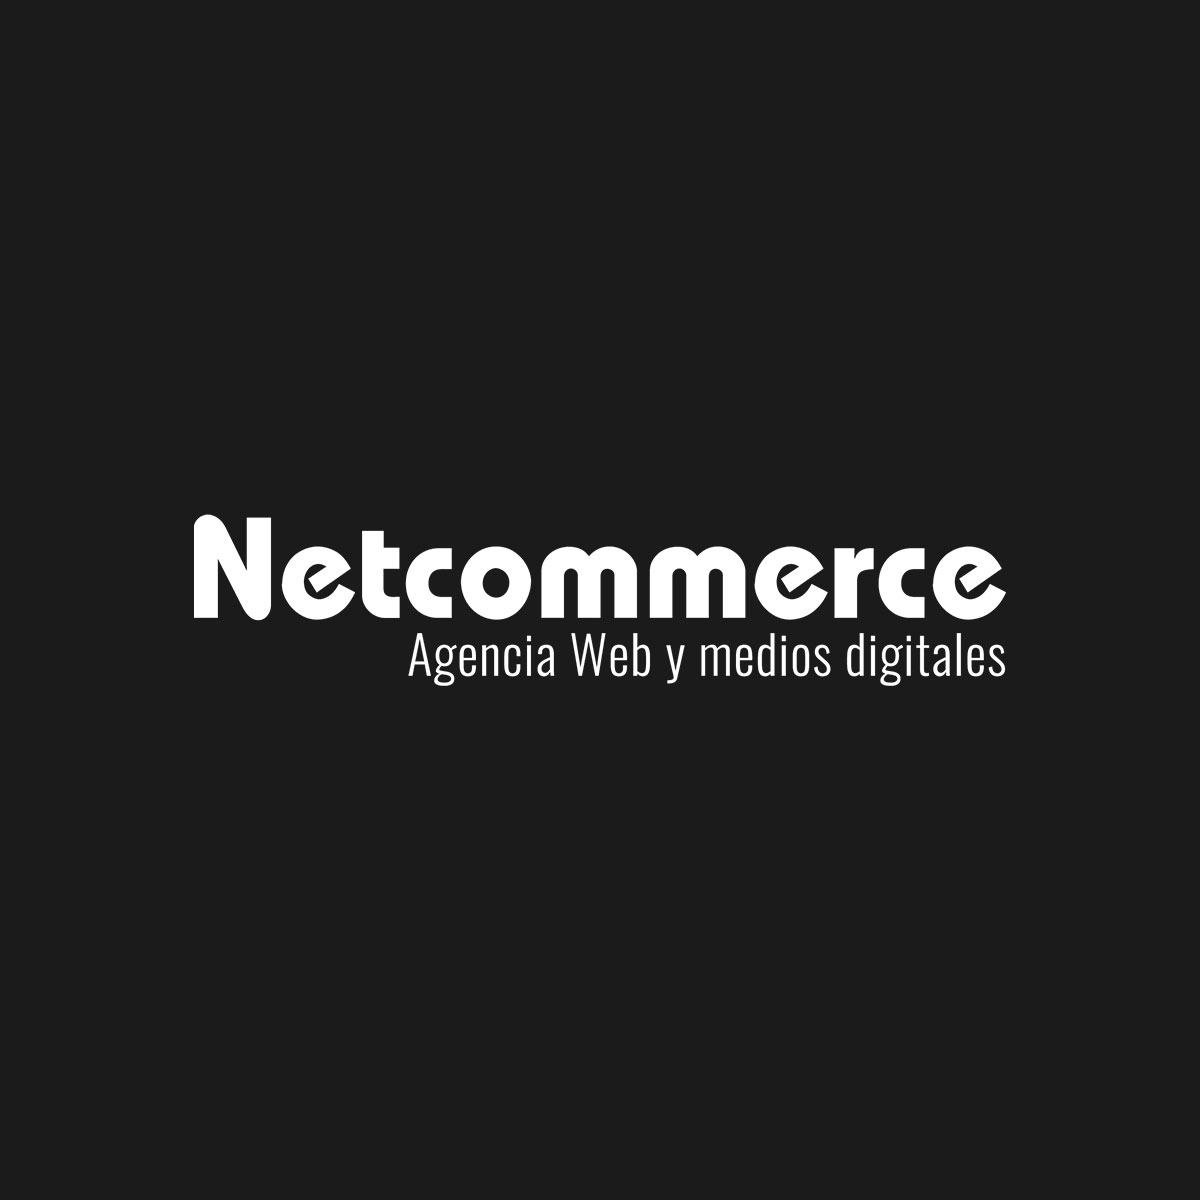 Netcommerce México